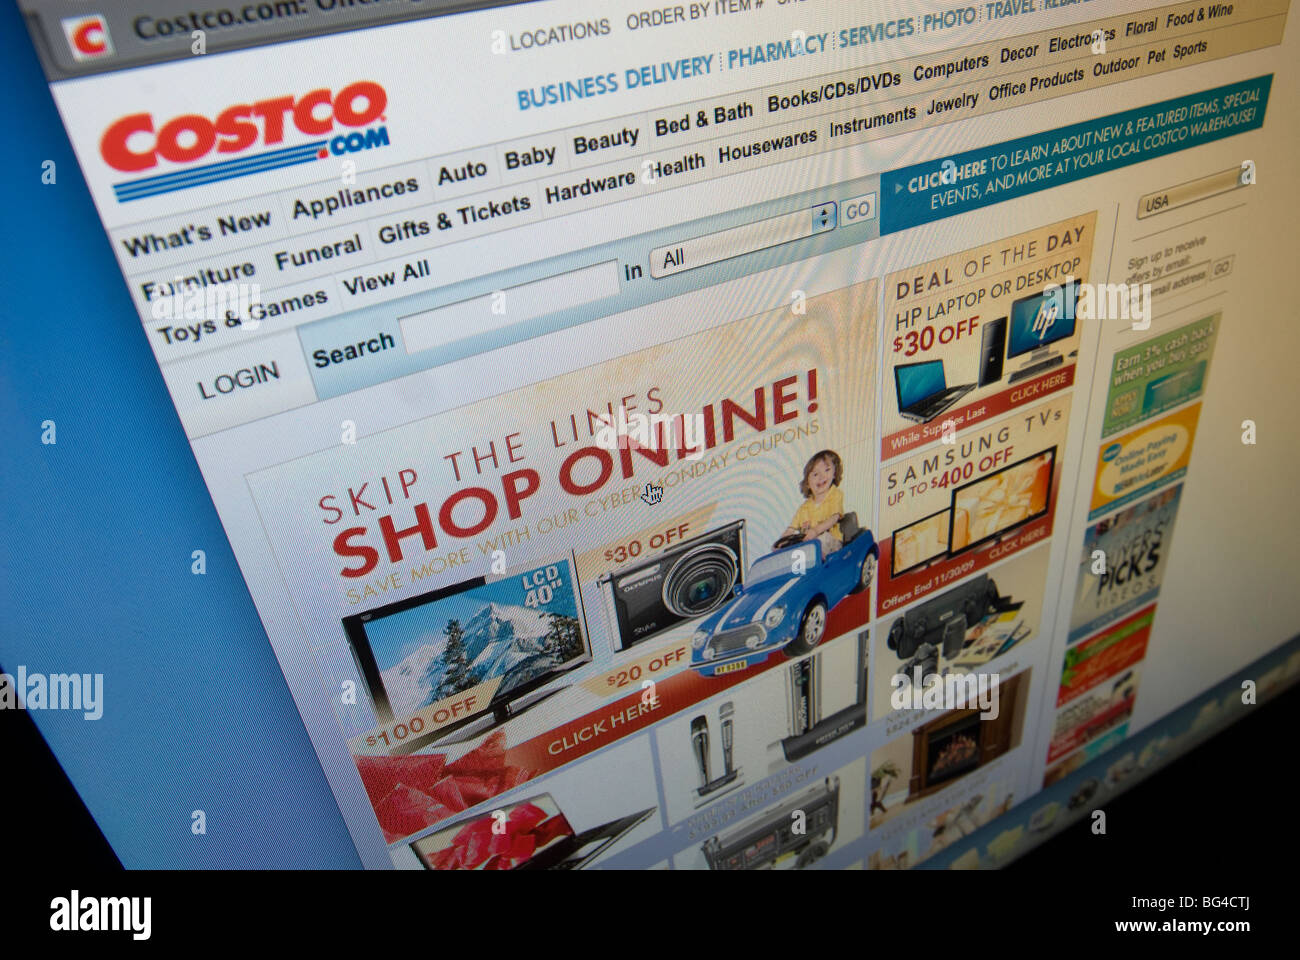 La Costco sito offre loro Cyber lunedì vendite Foto Stock